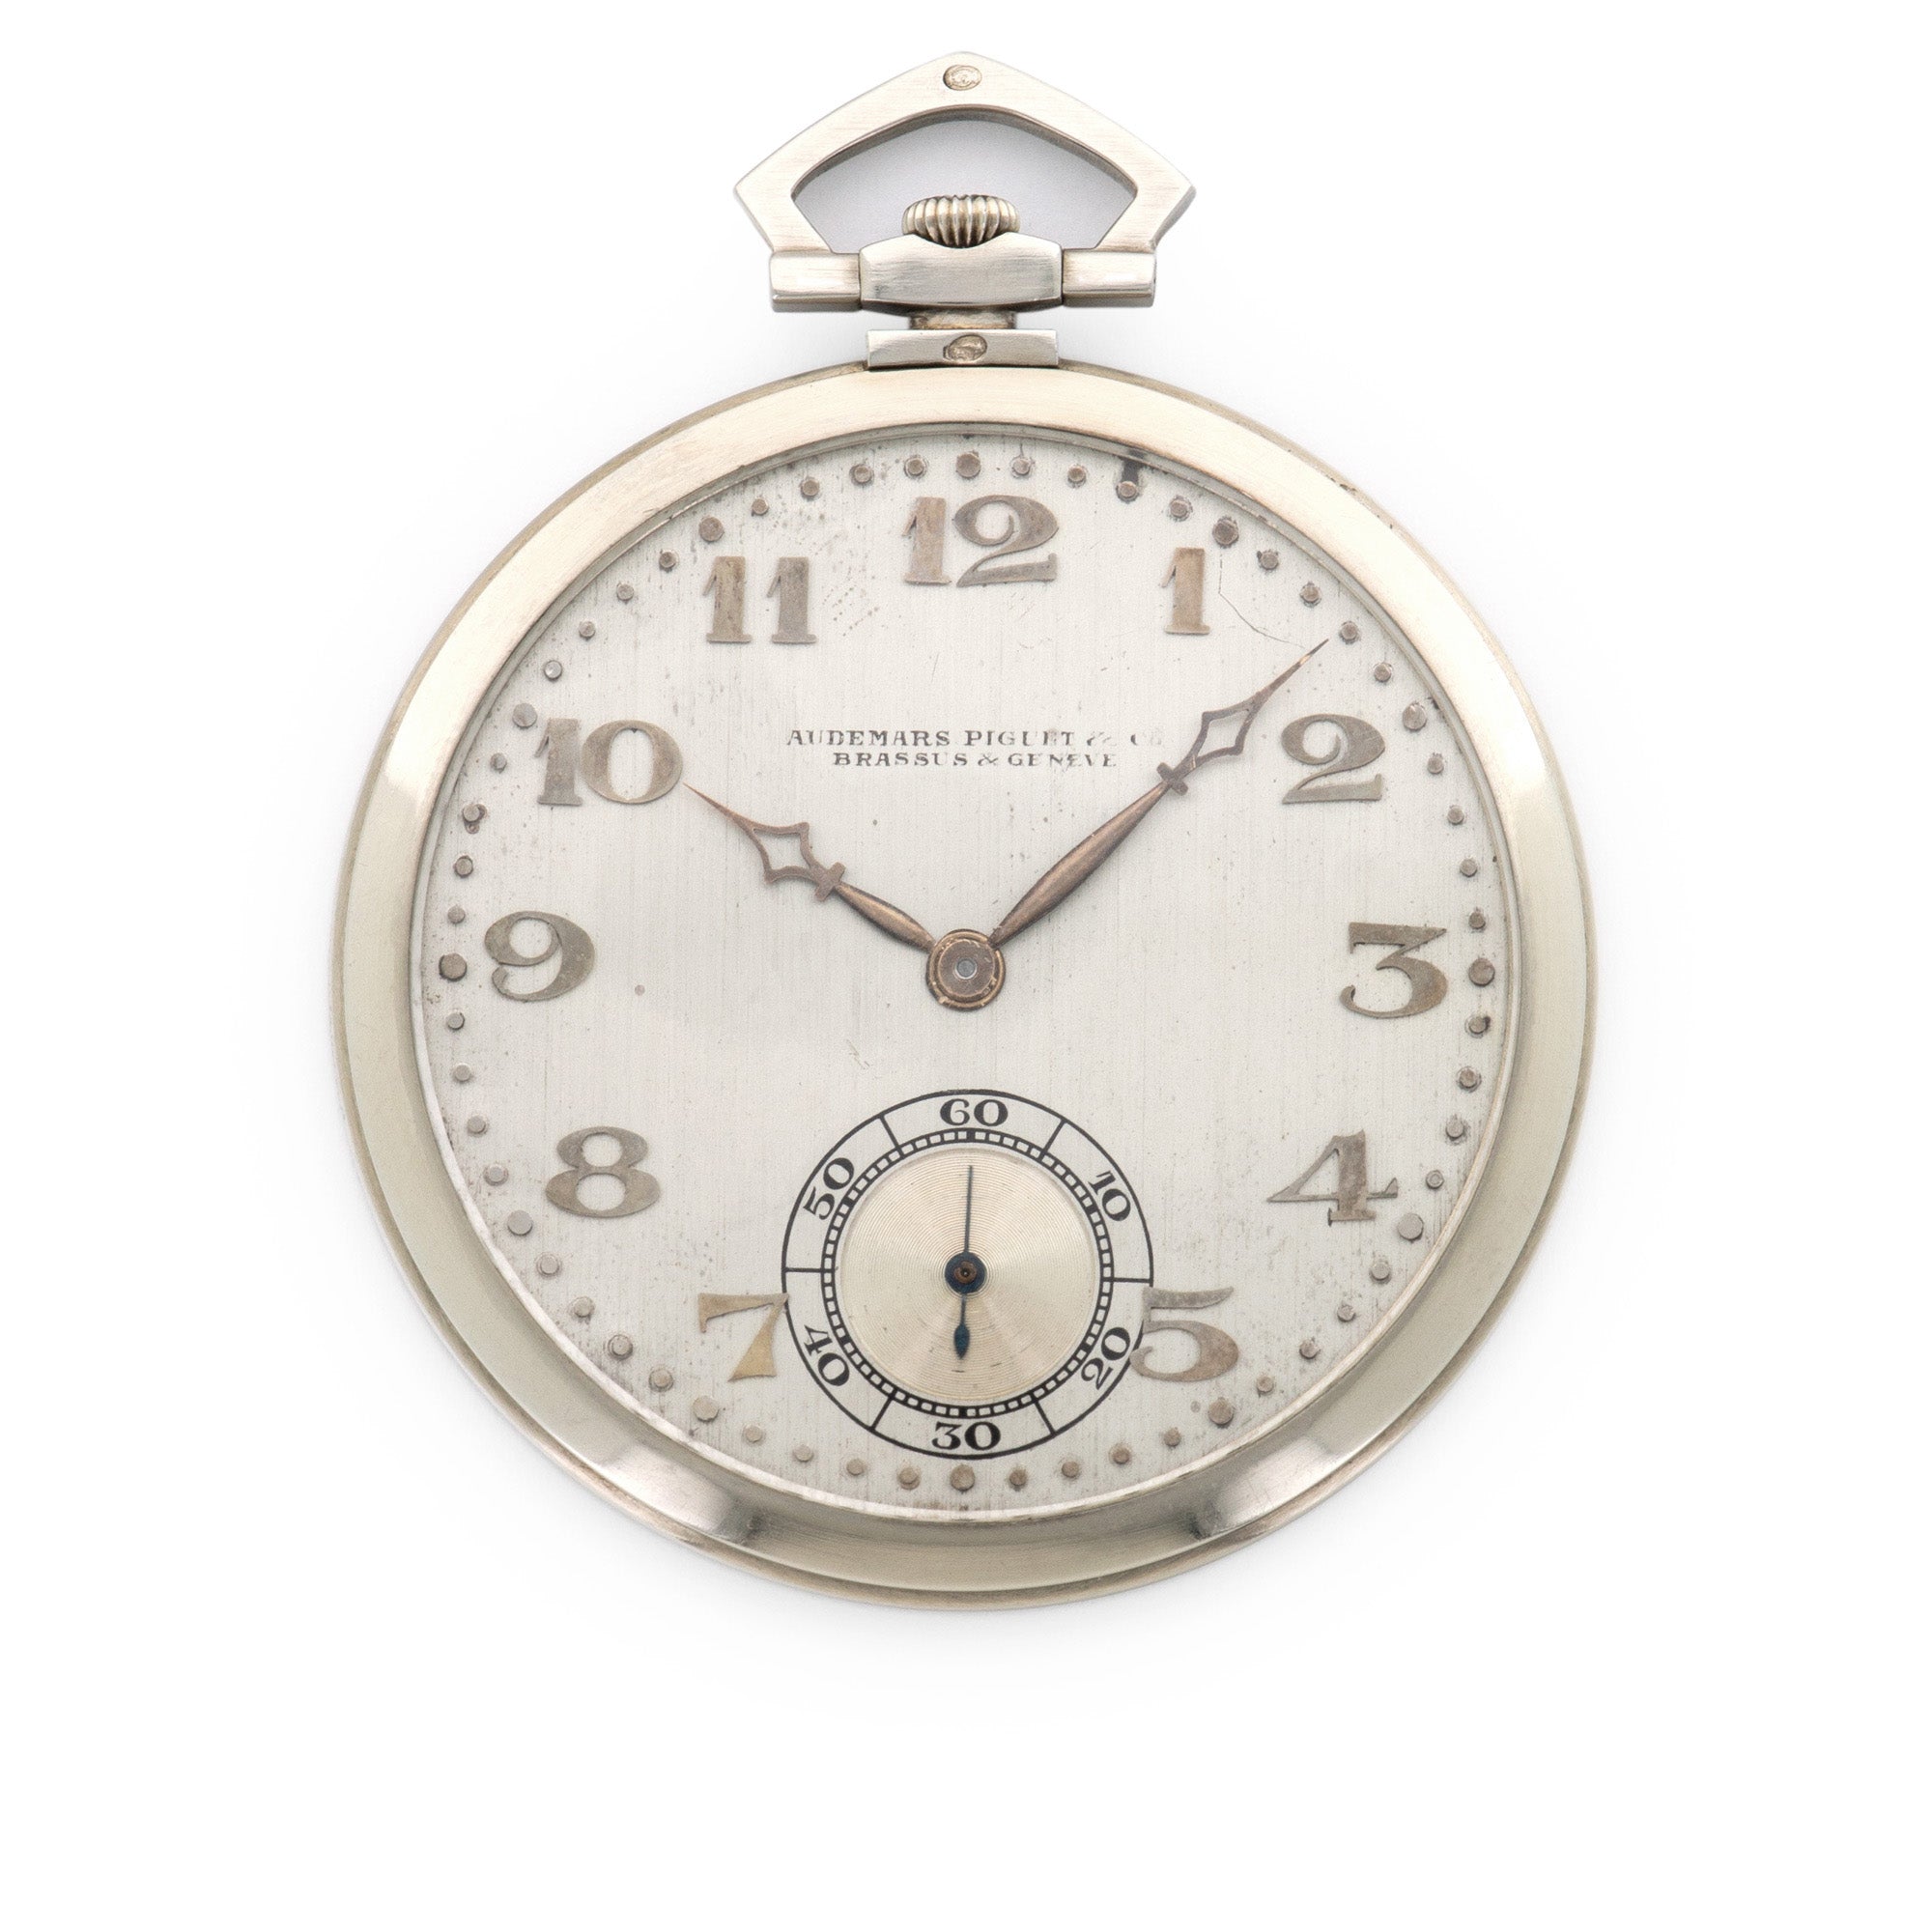 Audemars Piguet - Audemars Piguet White Gold Pocket Watch, with British Soccer Provenance - The Keystone Watches